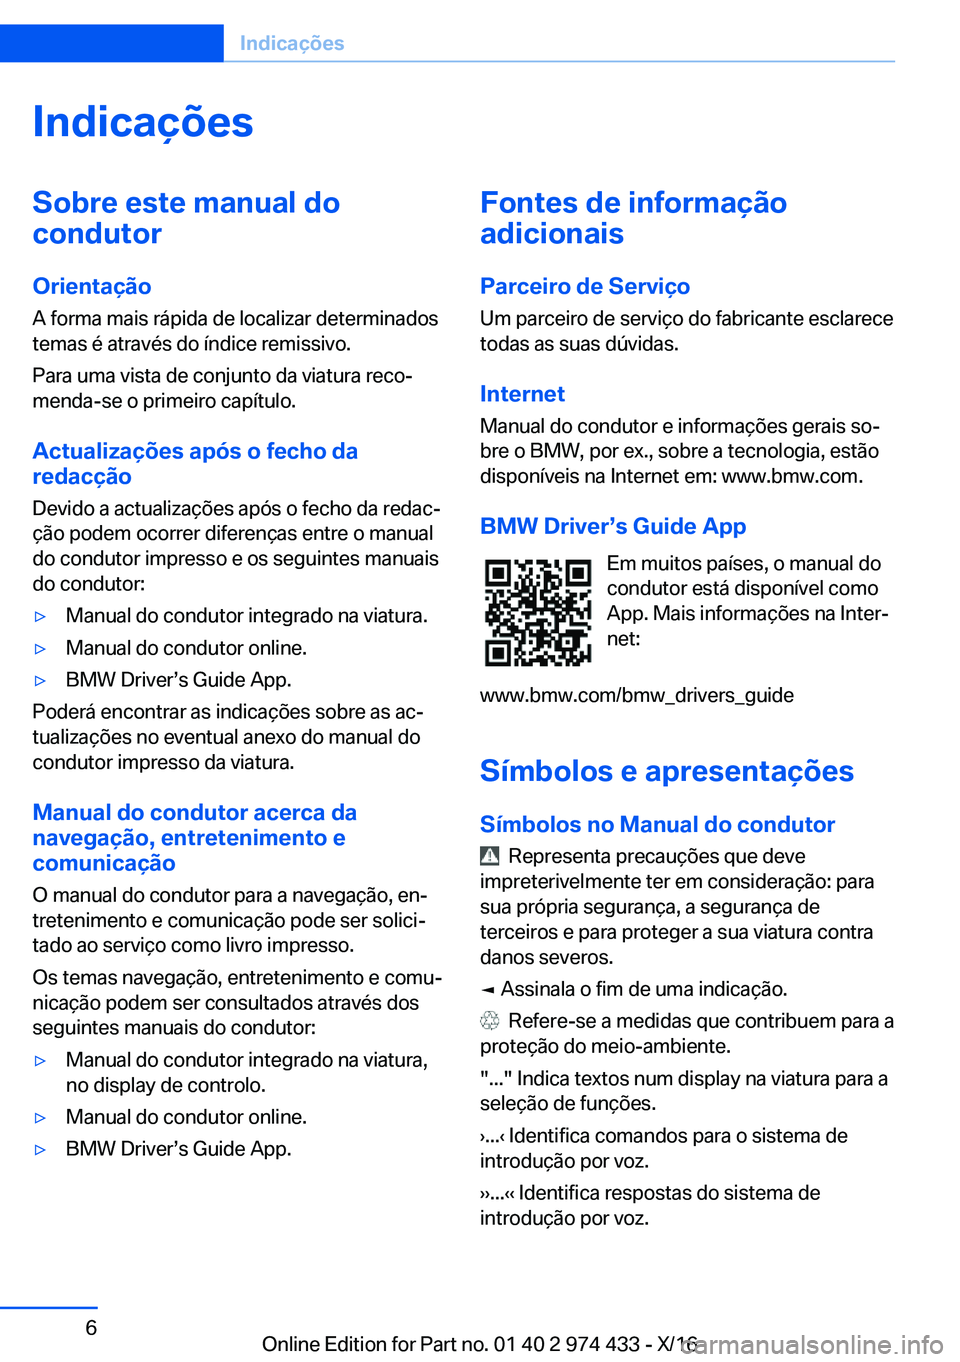 BMW 4 SERIES GRAN COUPE 2017  Manual do condutor (in Portuguese) �I�n�d�i�c�a�